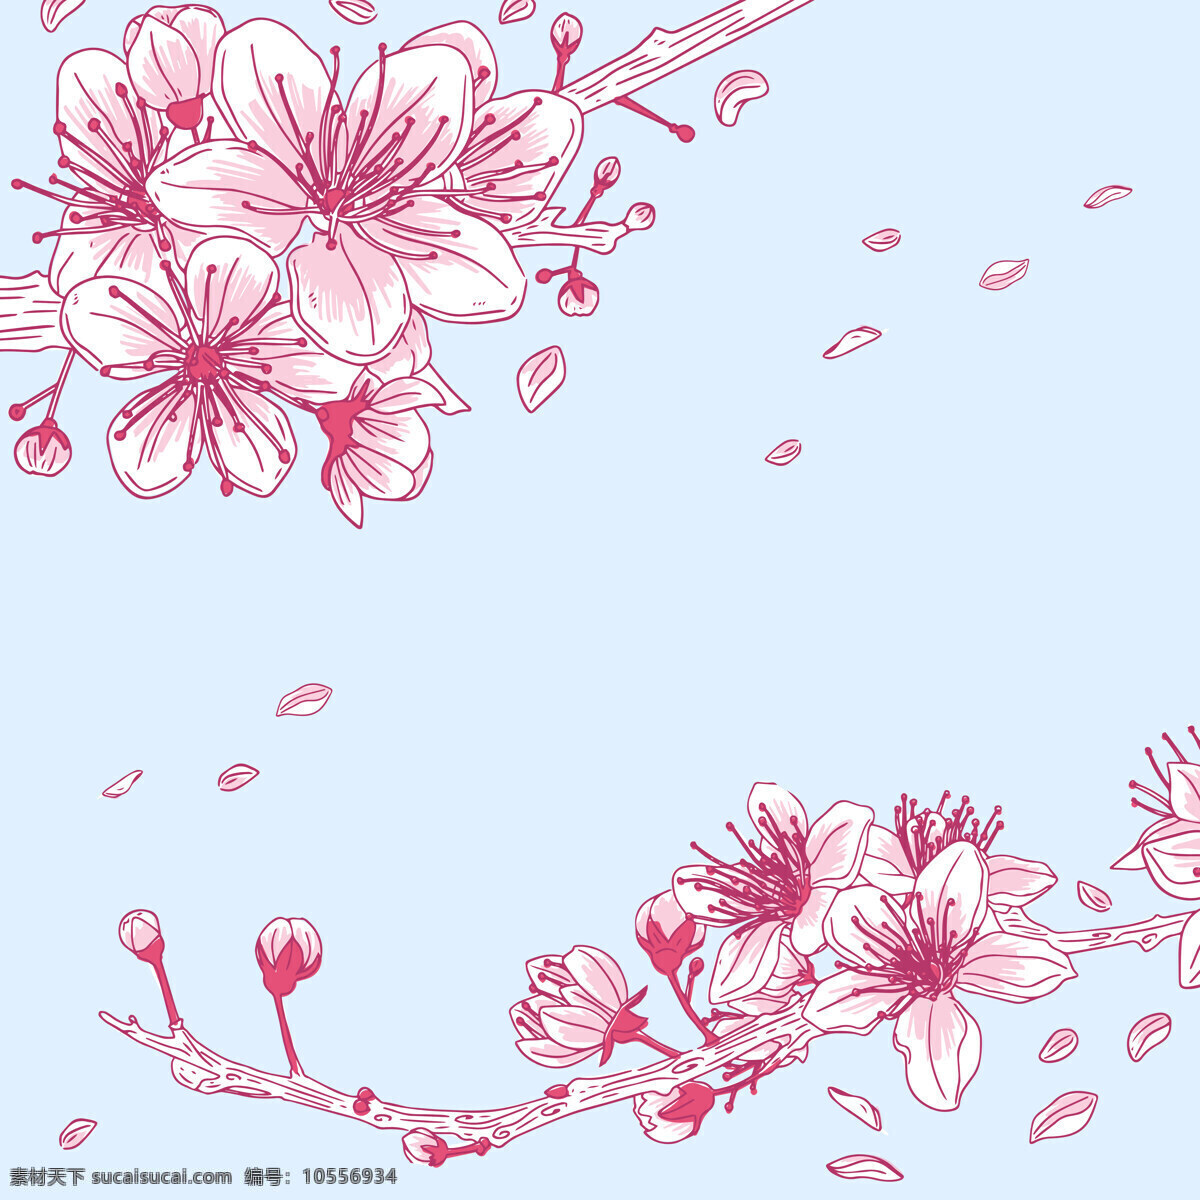 樱花壁纸 背景图片 樱花 樱花树 植物花卉 高清 图片壁纸